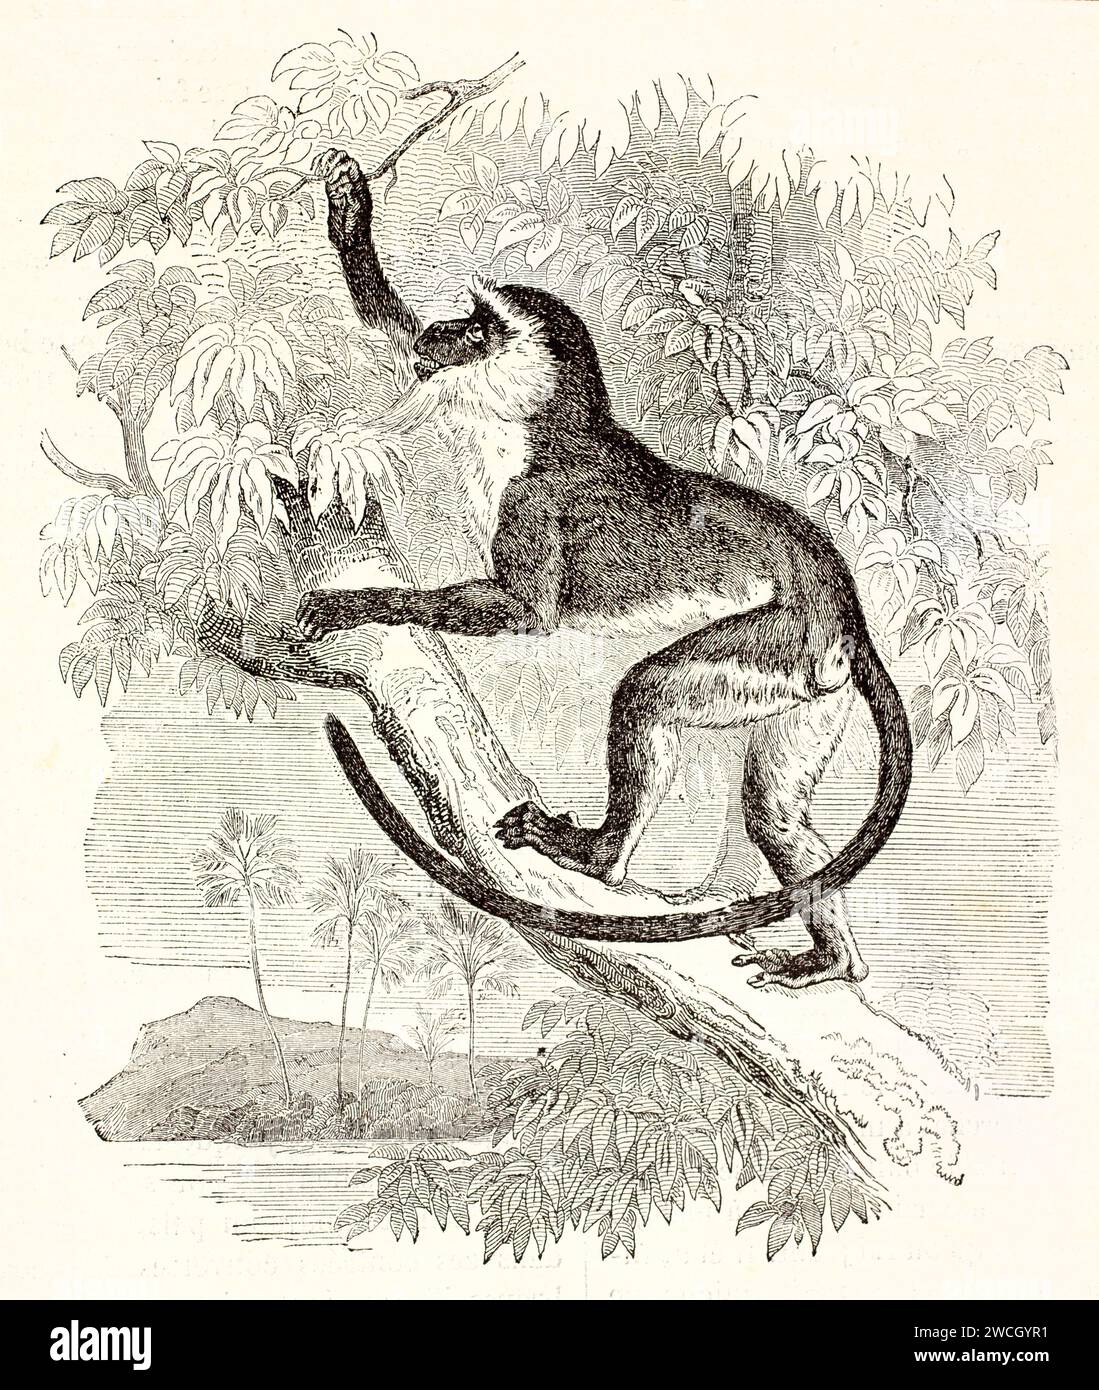 Alte gravierte Illustration von Diana Monkey, der auf einen Baum klettert. Von unbekanntem Autor, veröffentlicht auf Brehm, Les Mammifers, Baillière et fils, Paris, 1878 Stockfoto